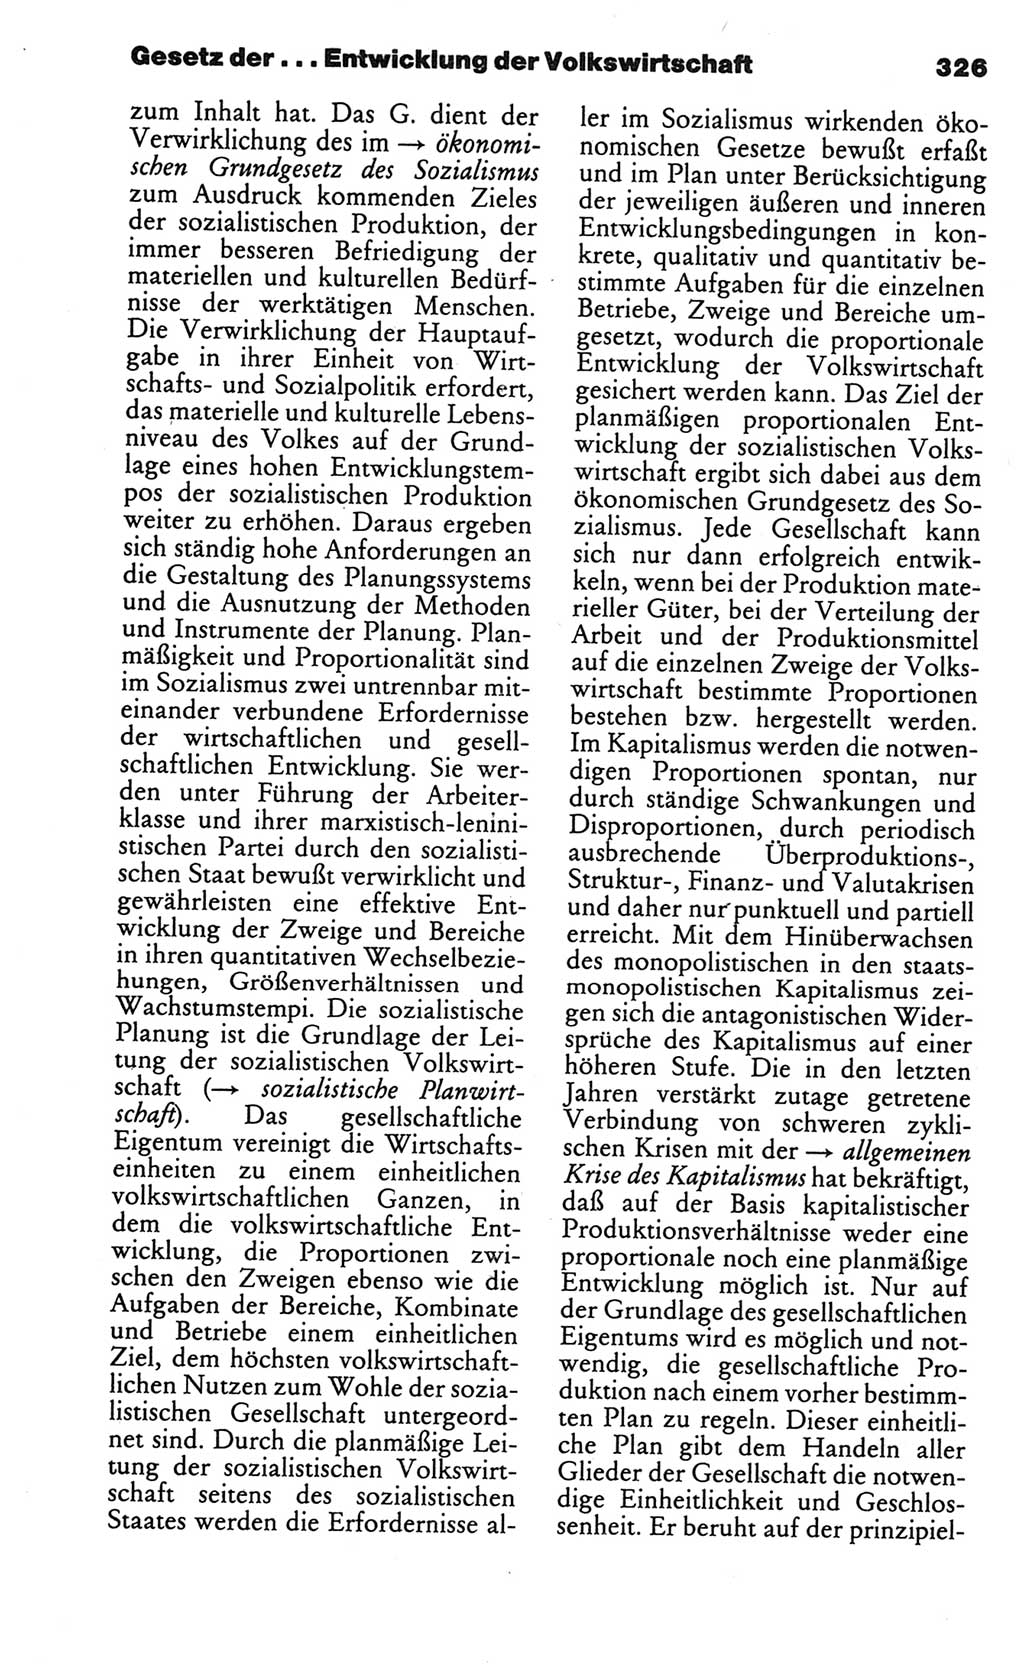 Kleines politisches Wörterbuch [Deutsche Demokratische Republik (DDR)] 1986, Seite 326 (Kl. pol. Wb. DDR 1986, S. 326)